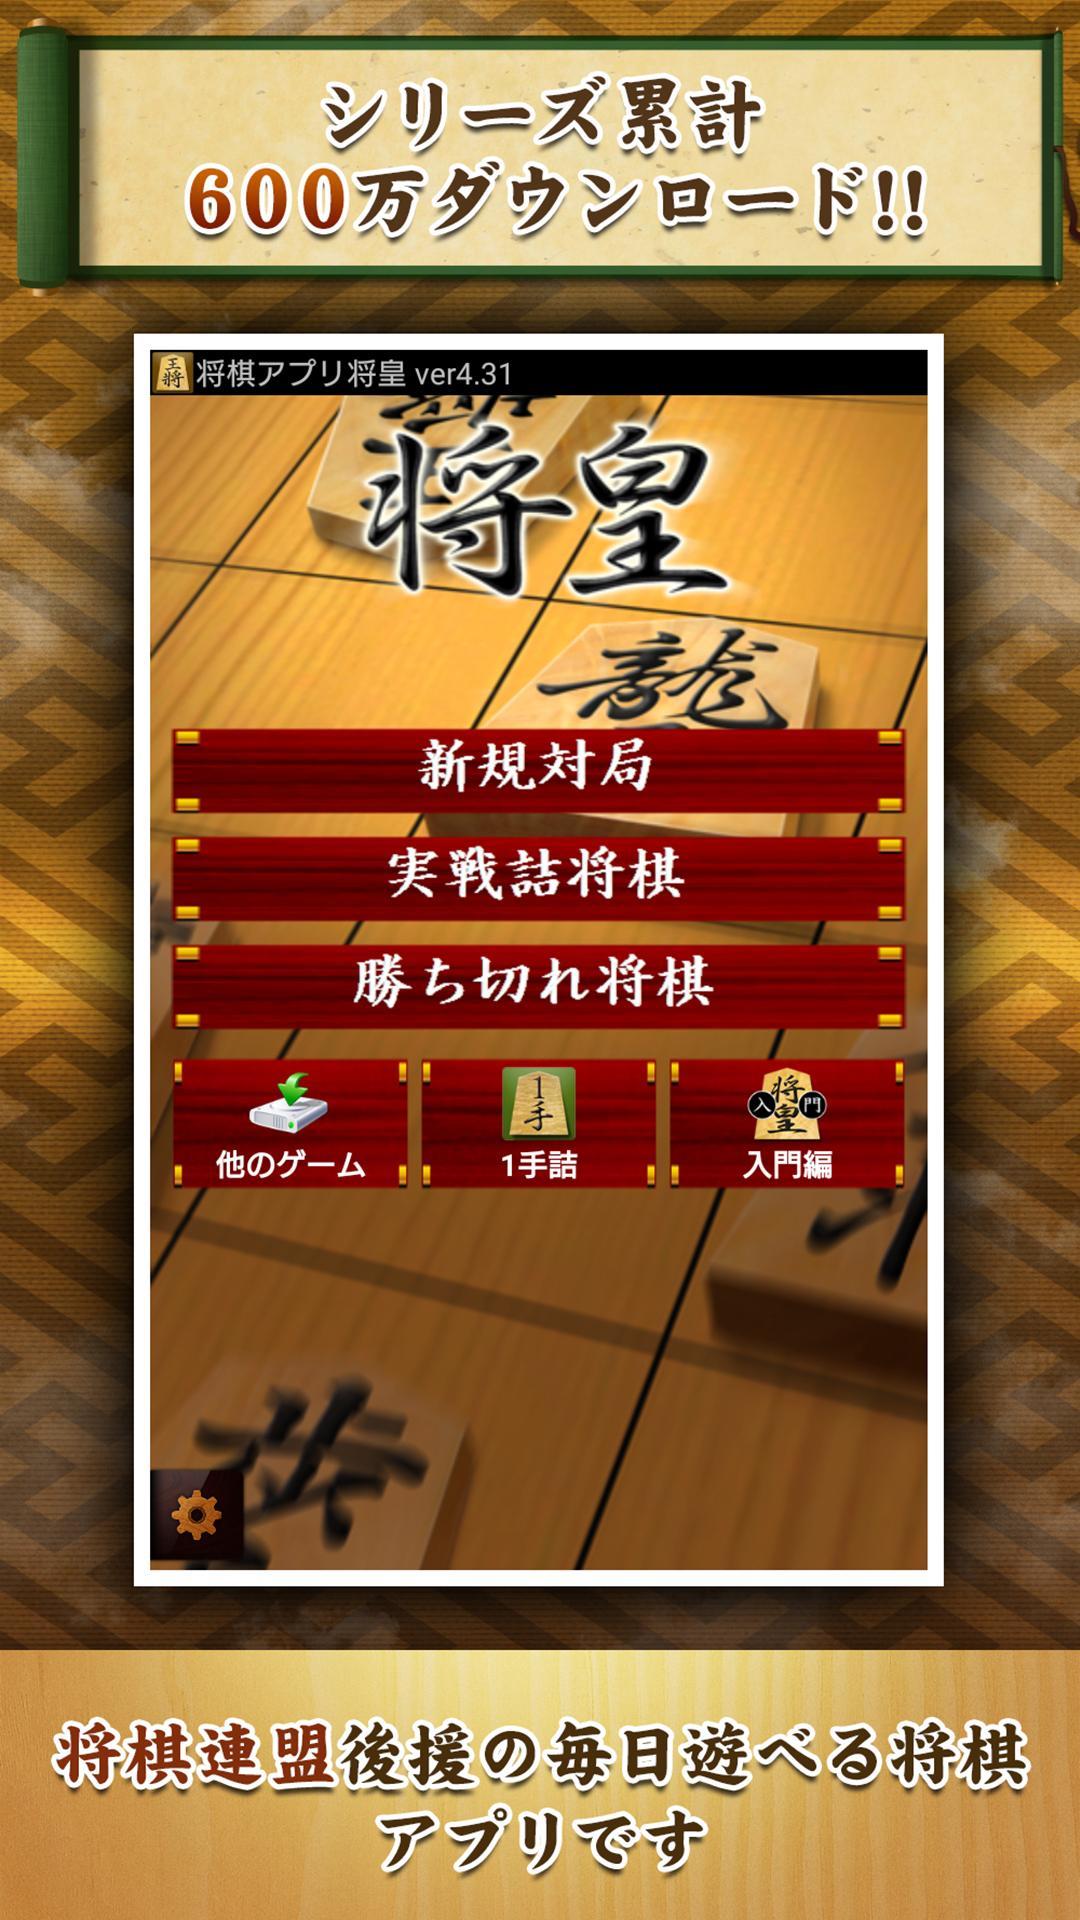 Screenshot 1 of Shogi-App Shoou 6.5